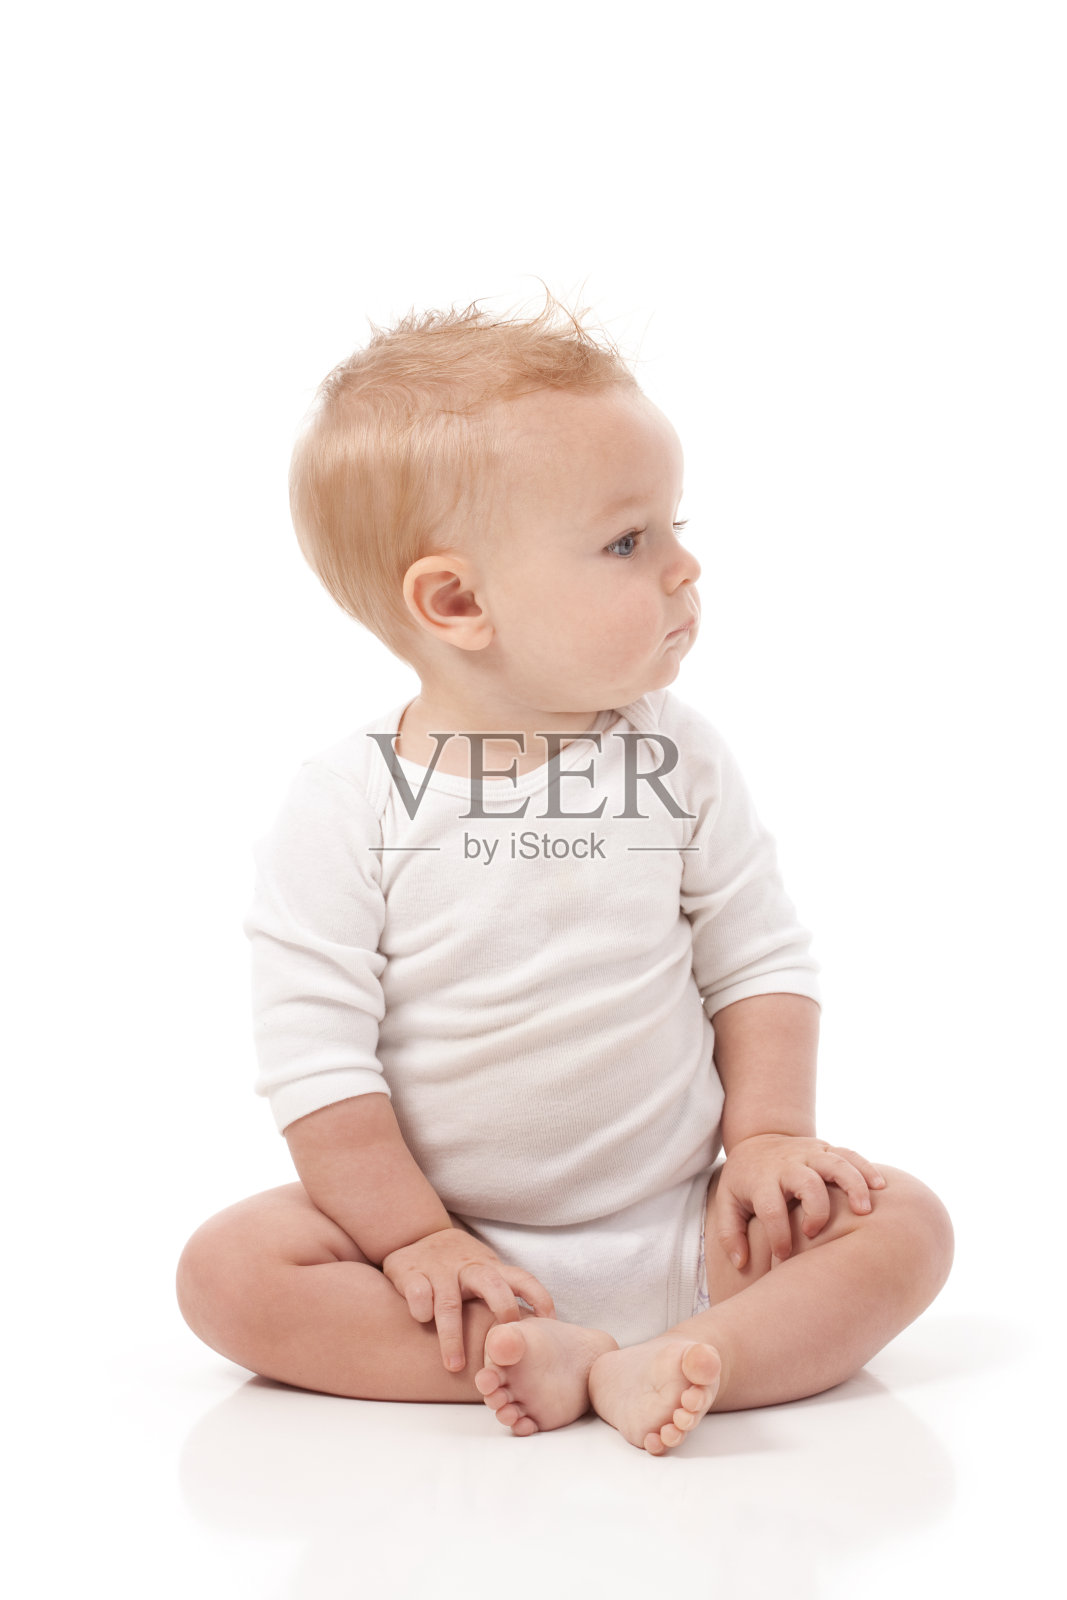 9个月大的婴儿在白色背景照片摄影图片